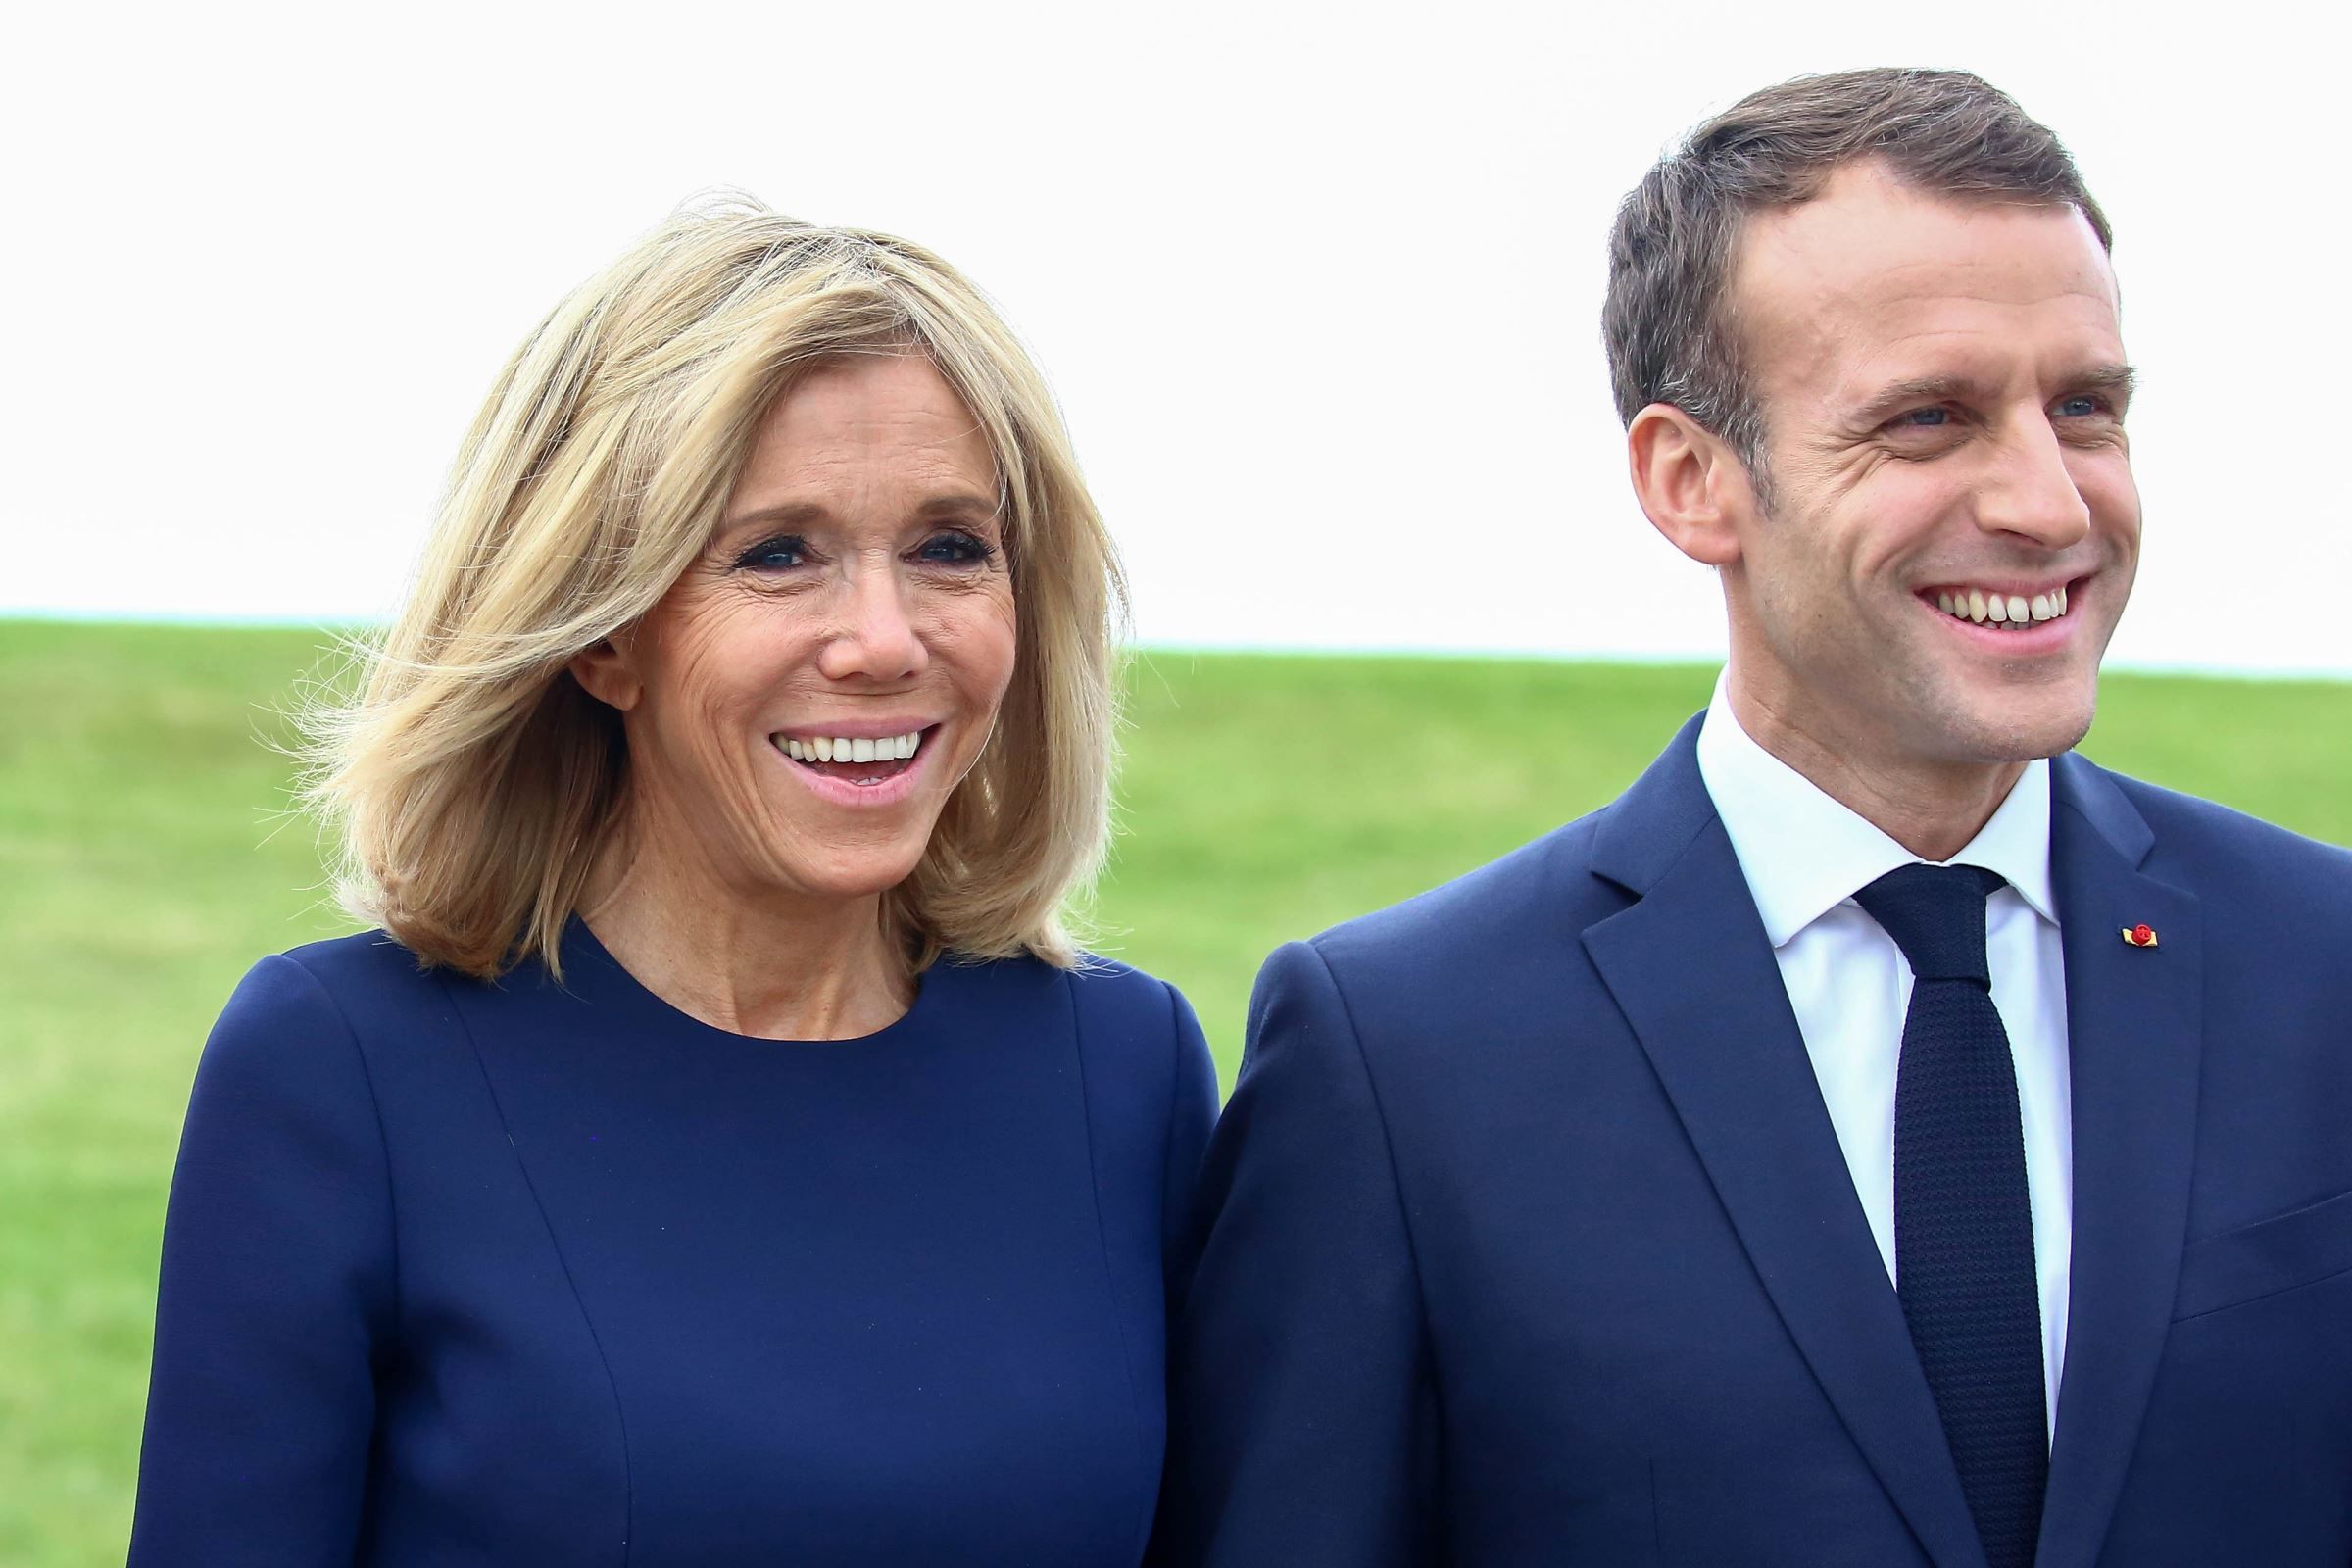 Quelle est la différence d’âge entre Emmanuel Macron et sa femme ?